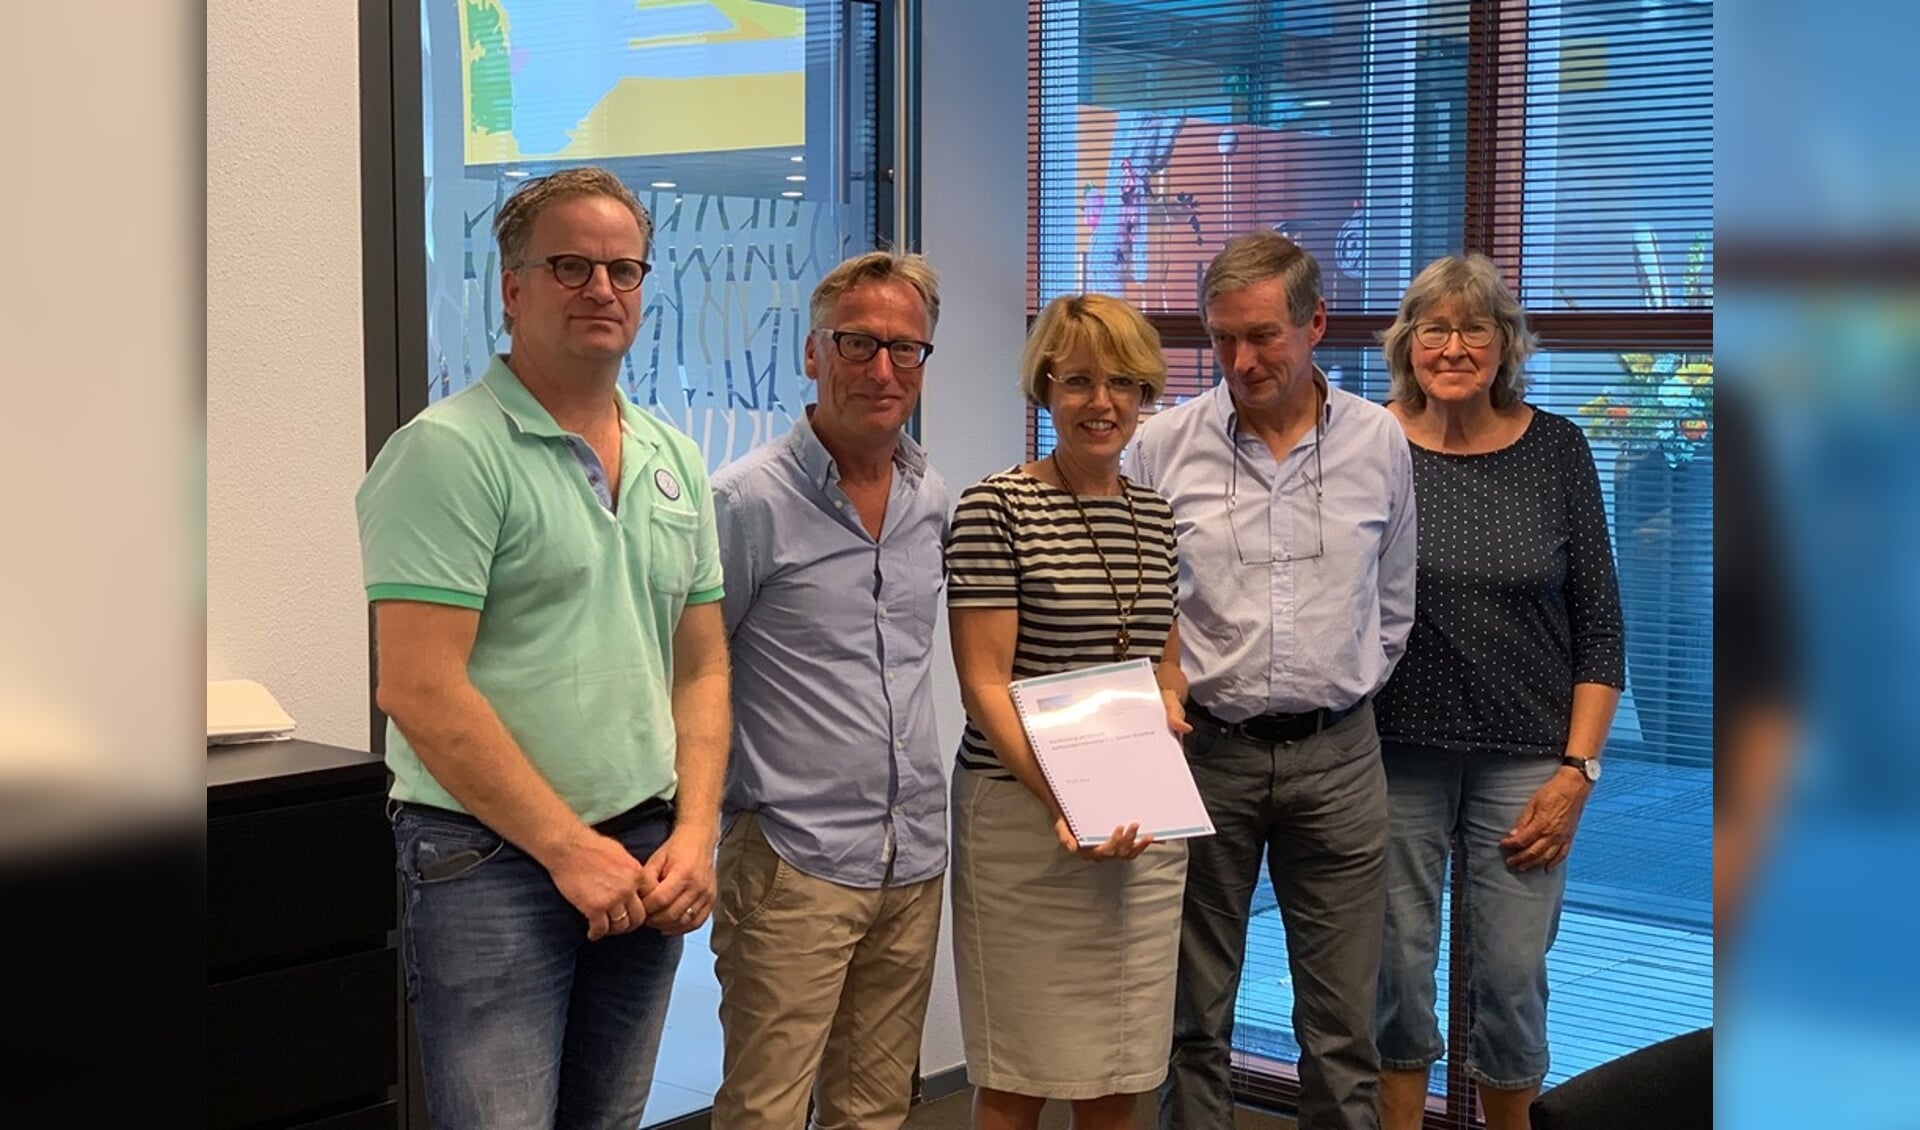 De petitie tegen het zonnepark is aan de wethouder overhandigd. Foto: gemeente Winterswijk